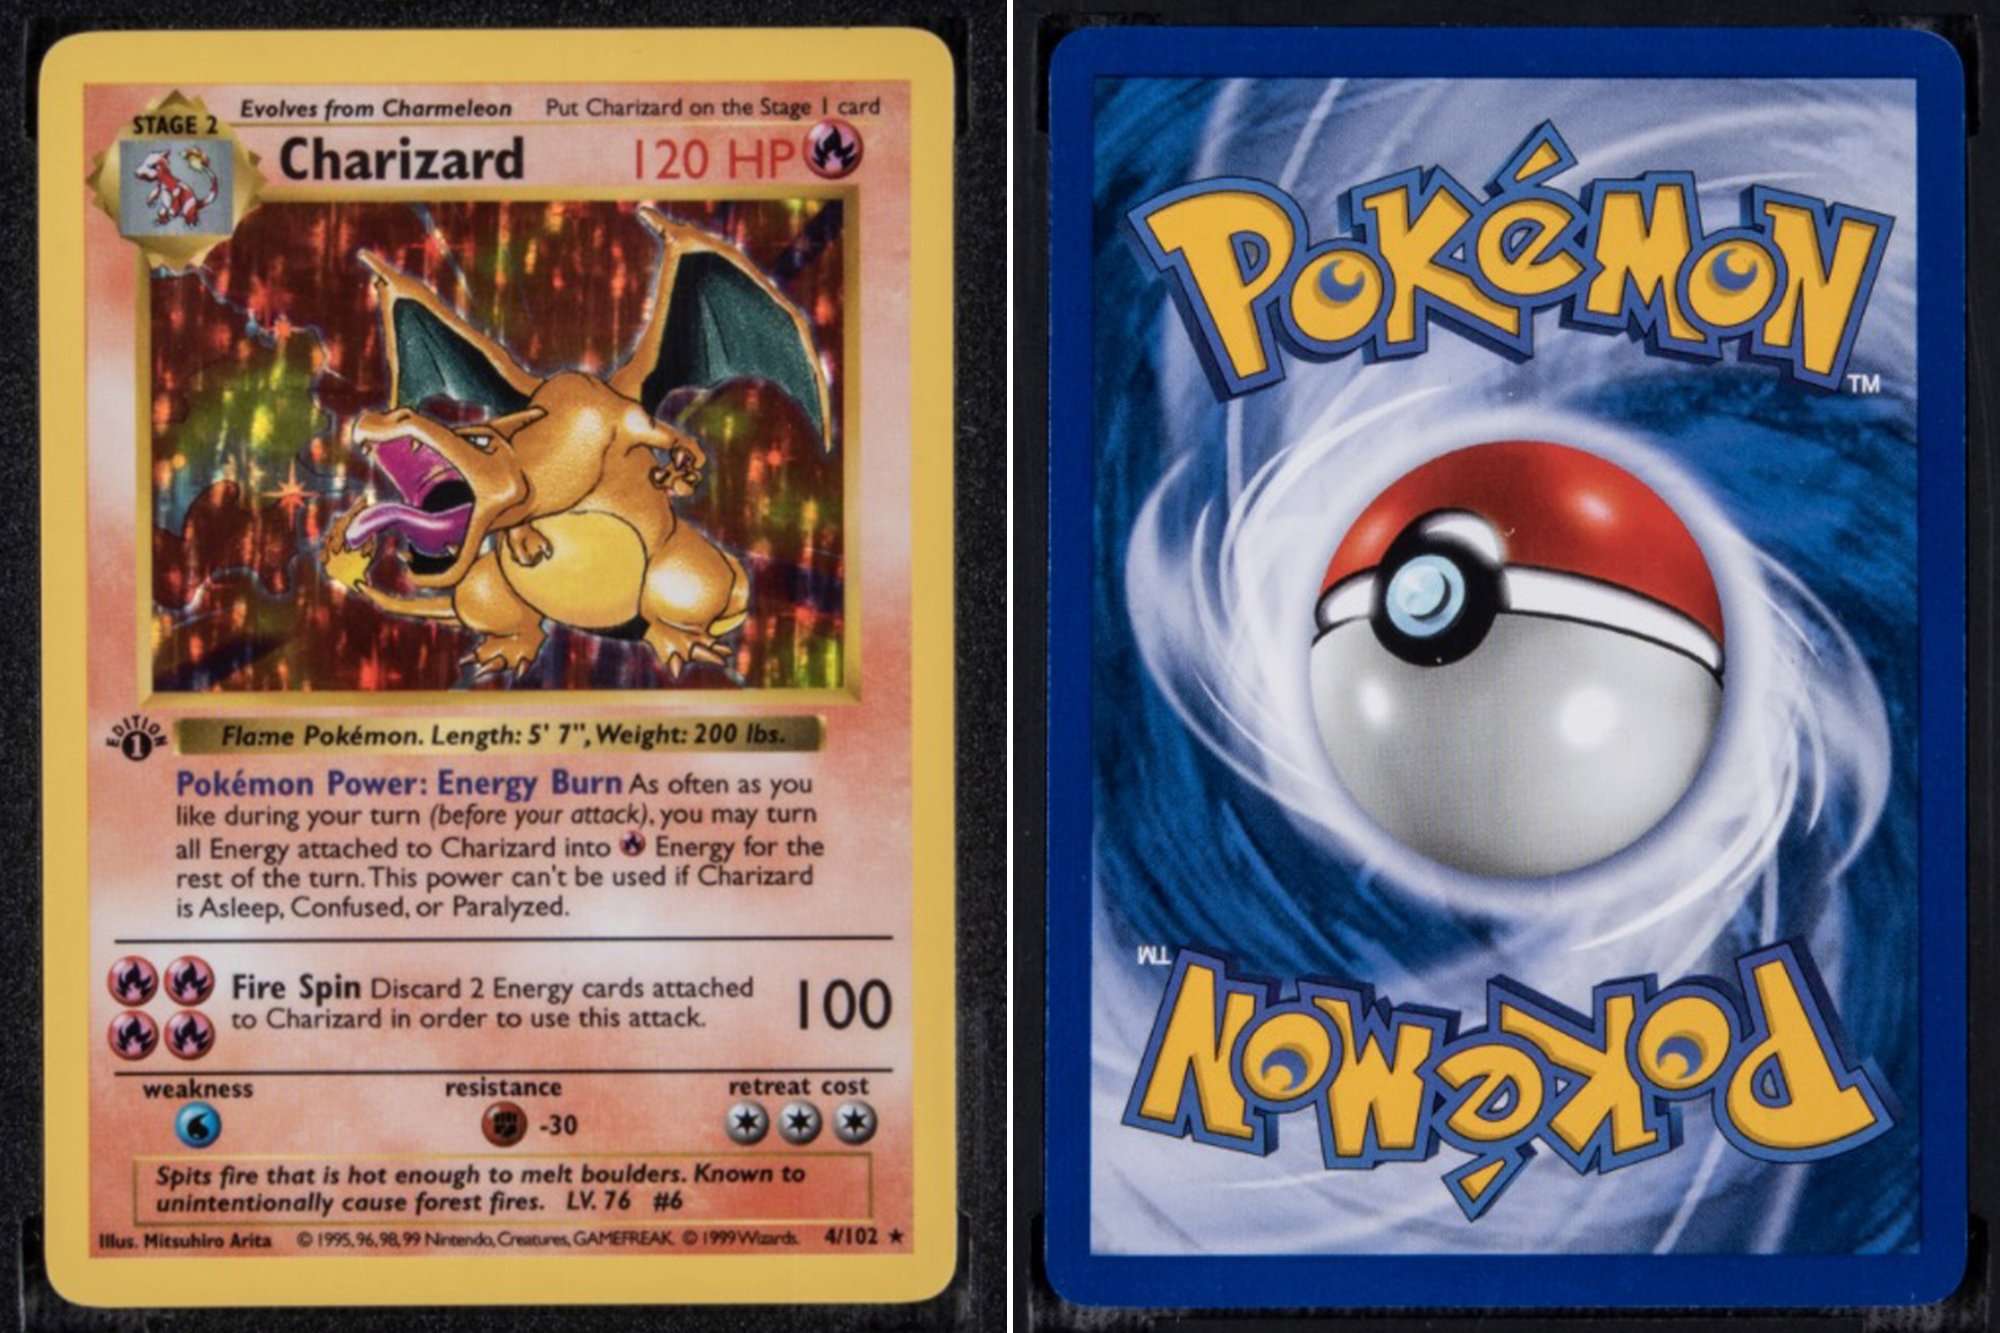 Rare Pokémon card already has $170K bid ahead of auction